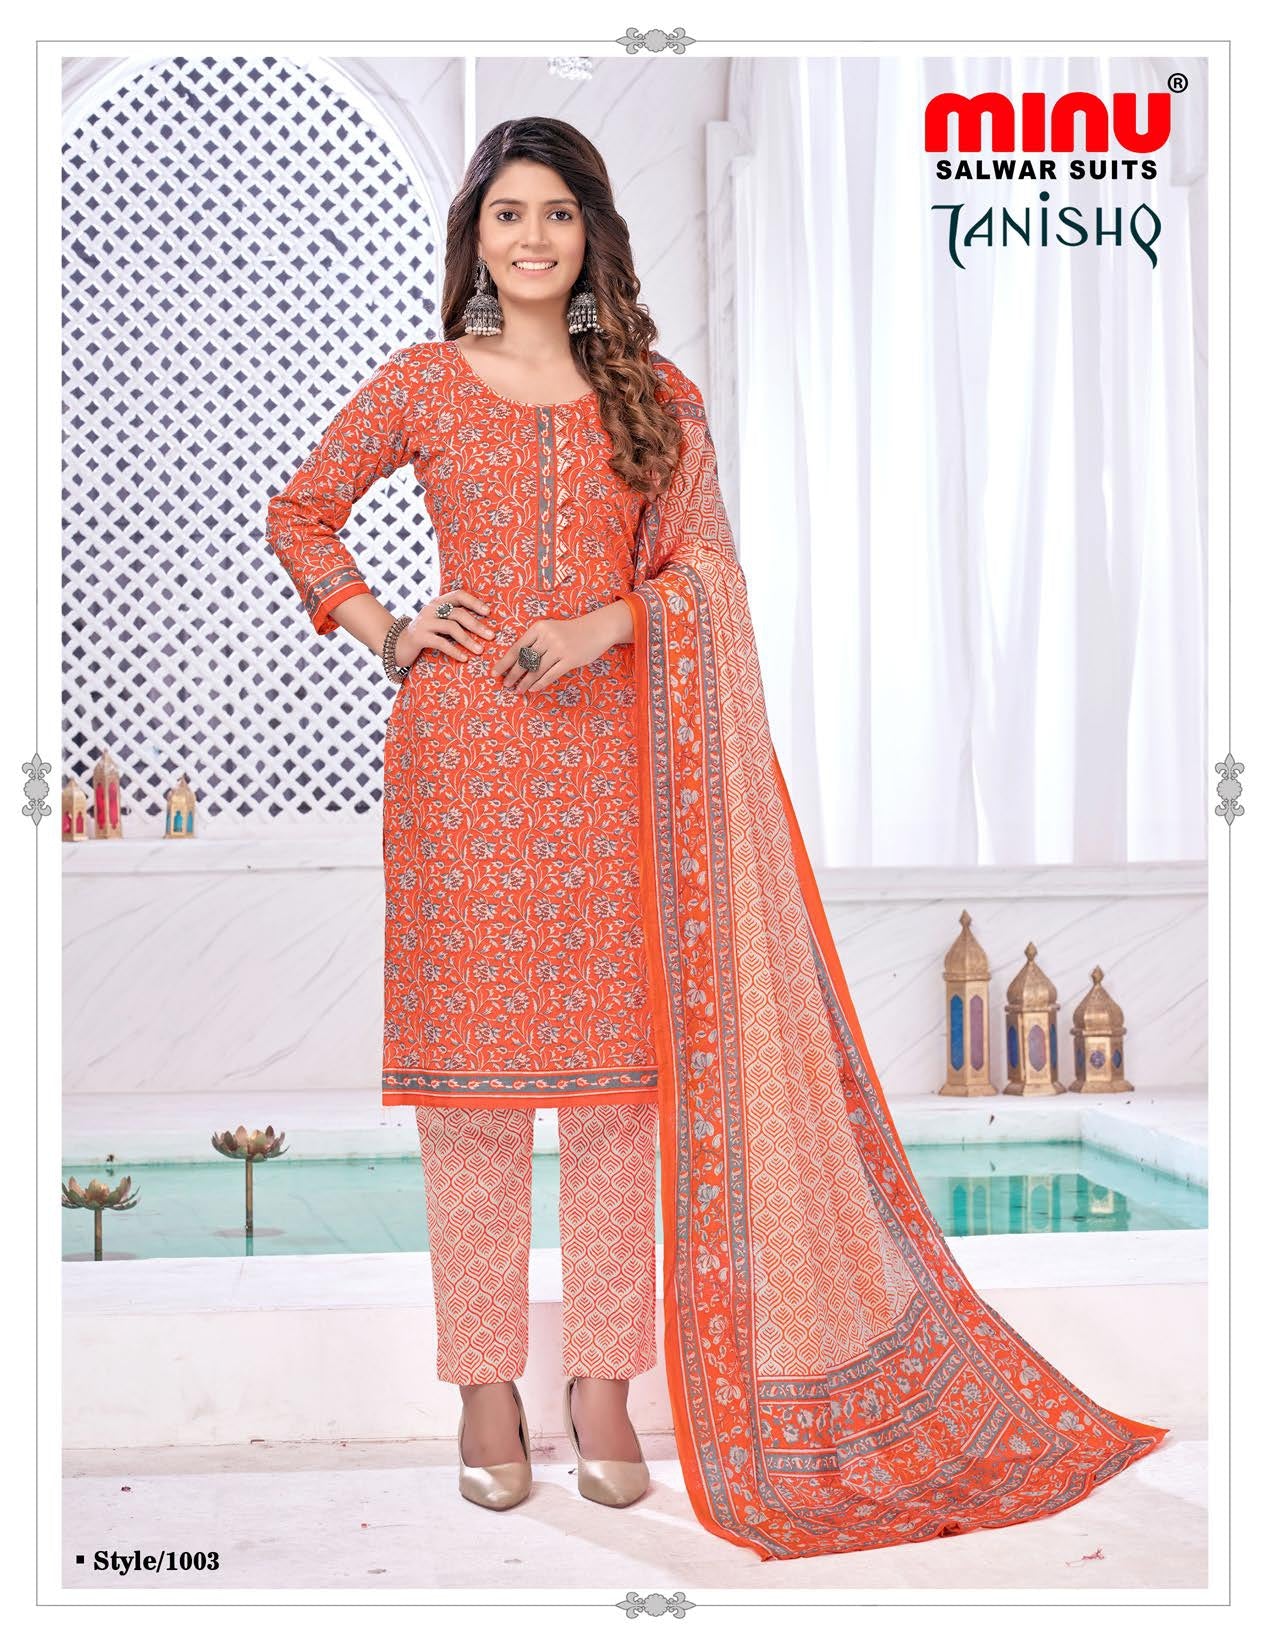 wholesale salwar suit from ladies suit manufacturer